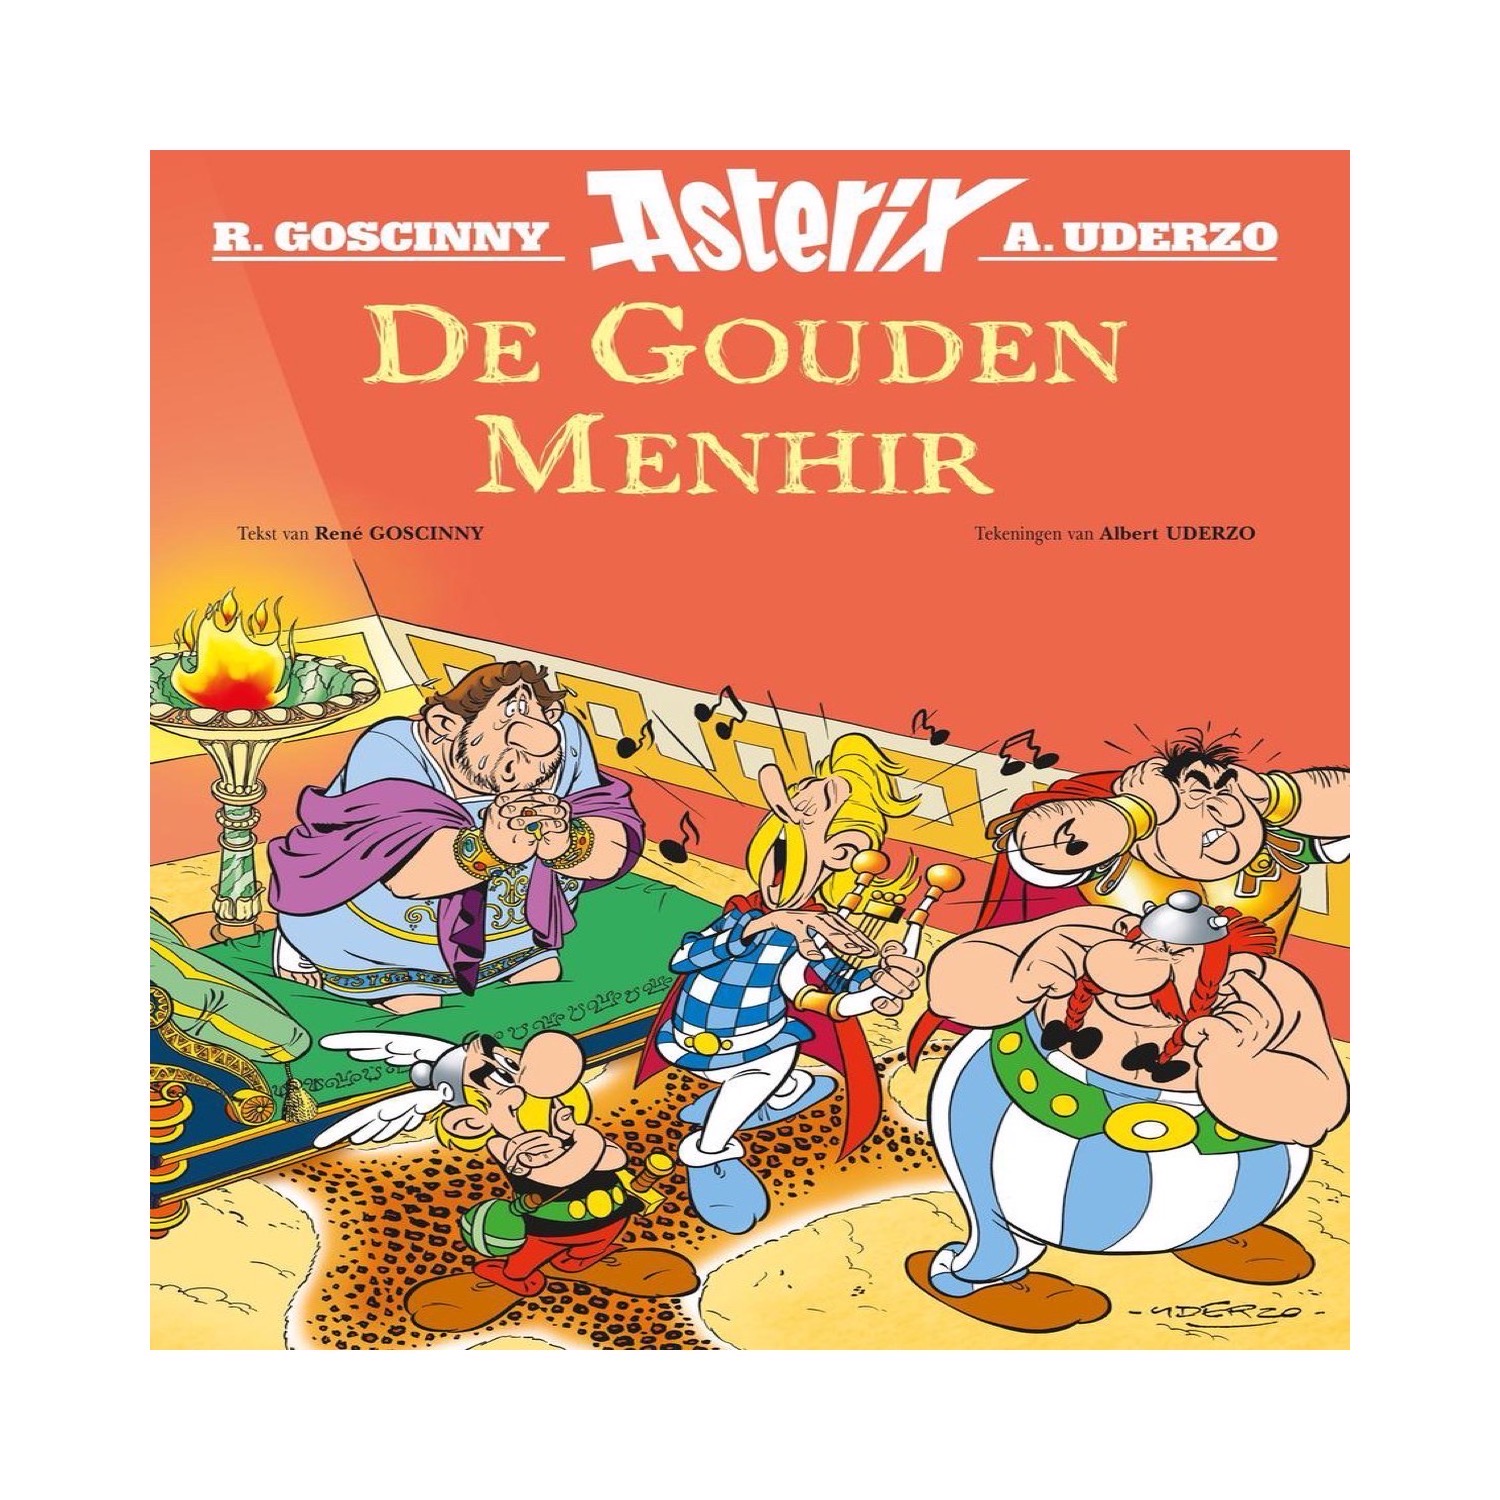 Ritmisch kust werkplaats Asterix en Obelix • Bruna Colmschate & Deventer